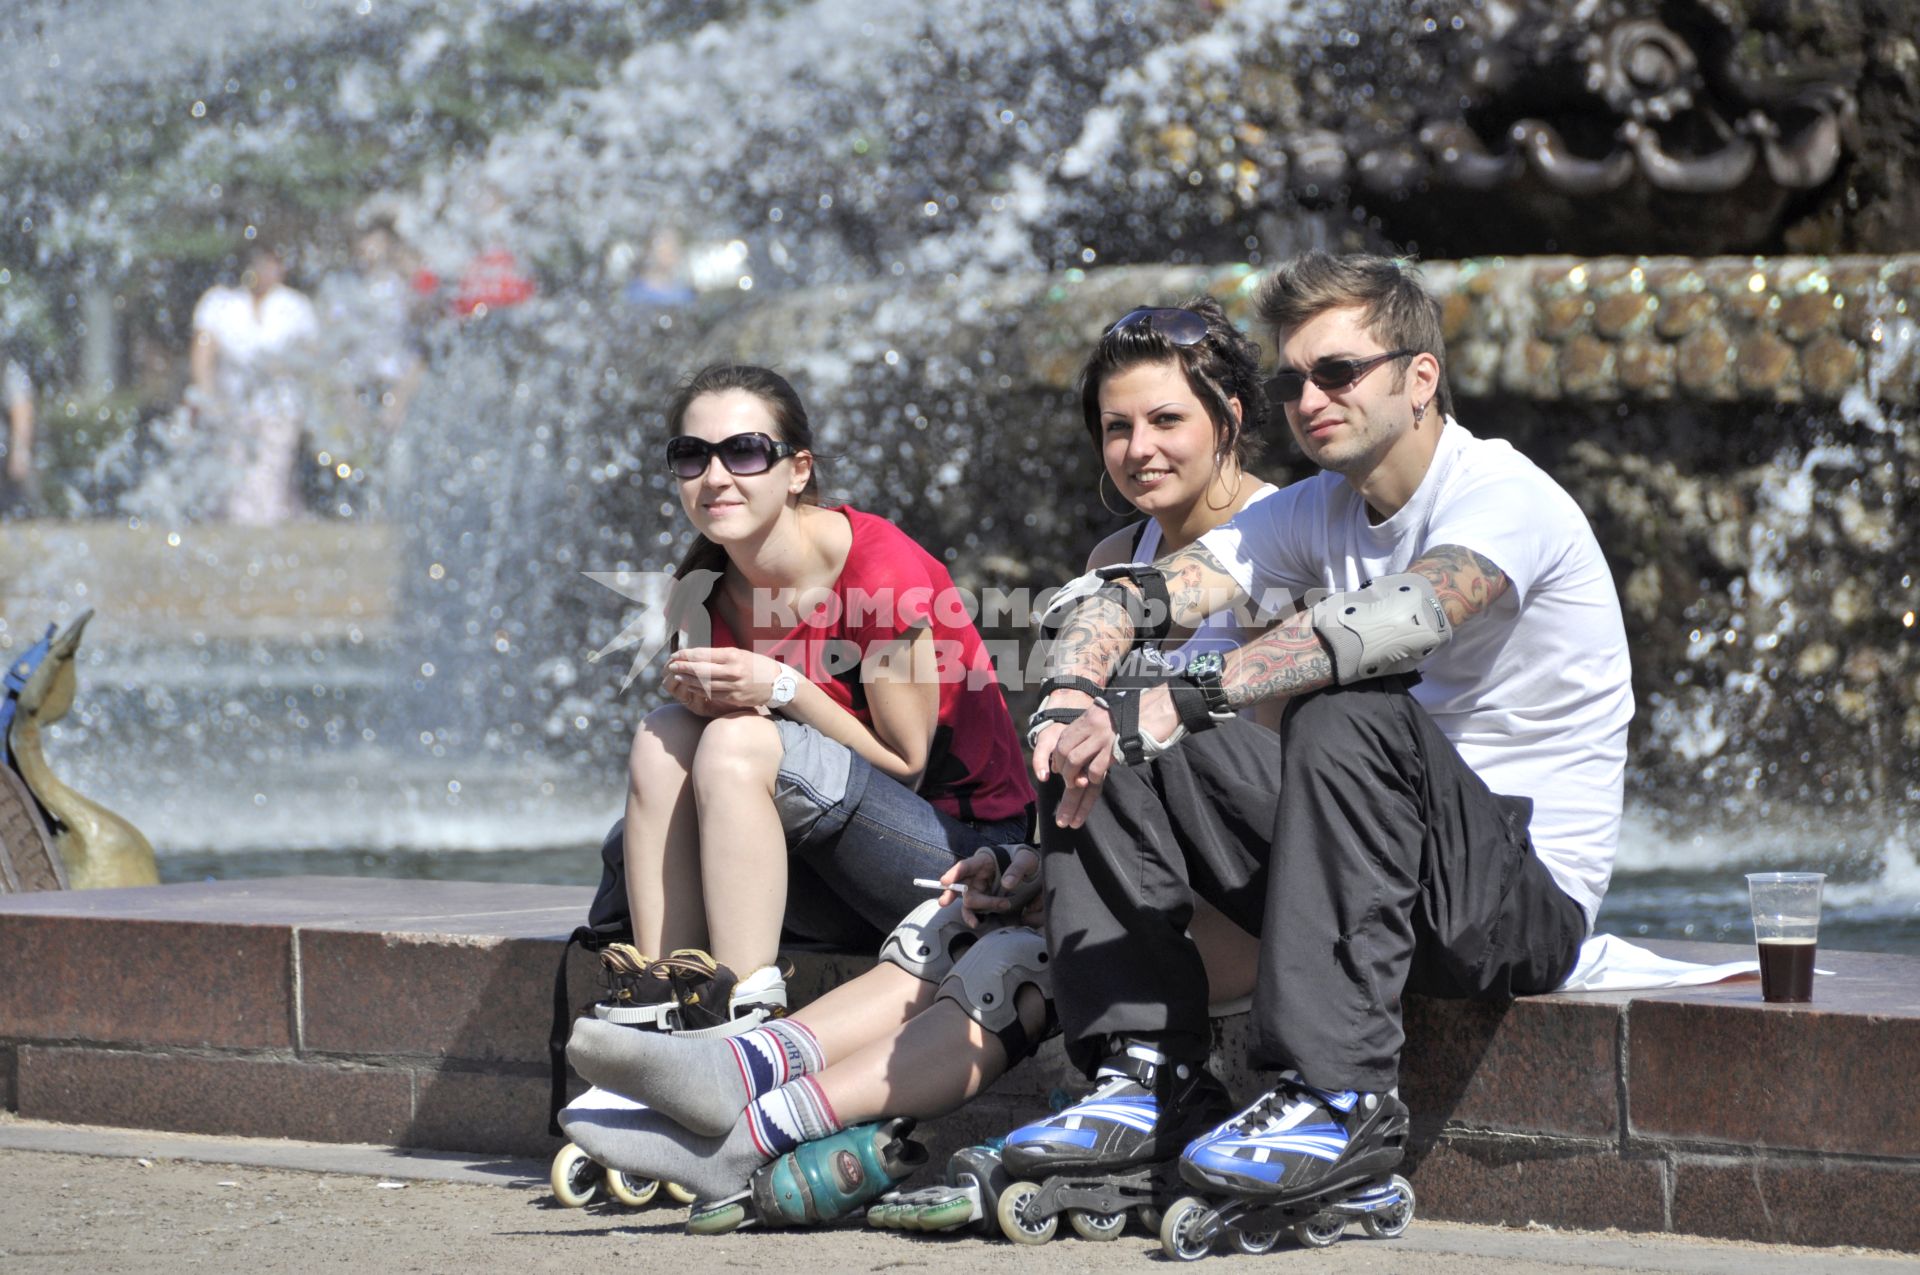 05.07.2010 Роллеры отдыхают у фонтана на ВВЦ.